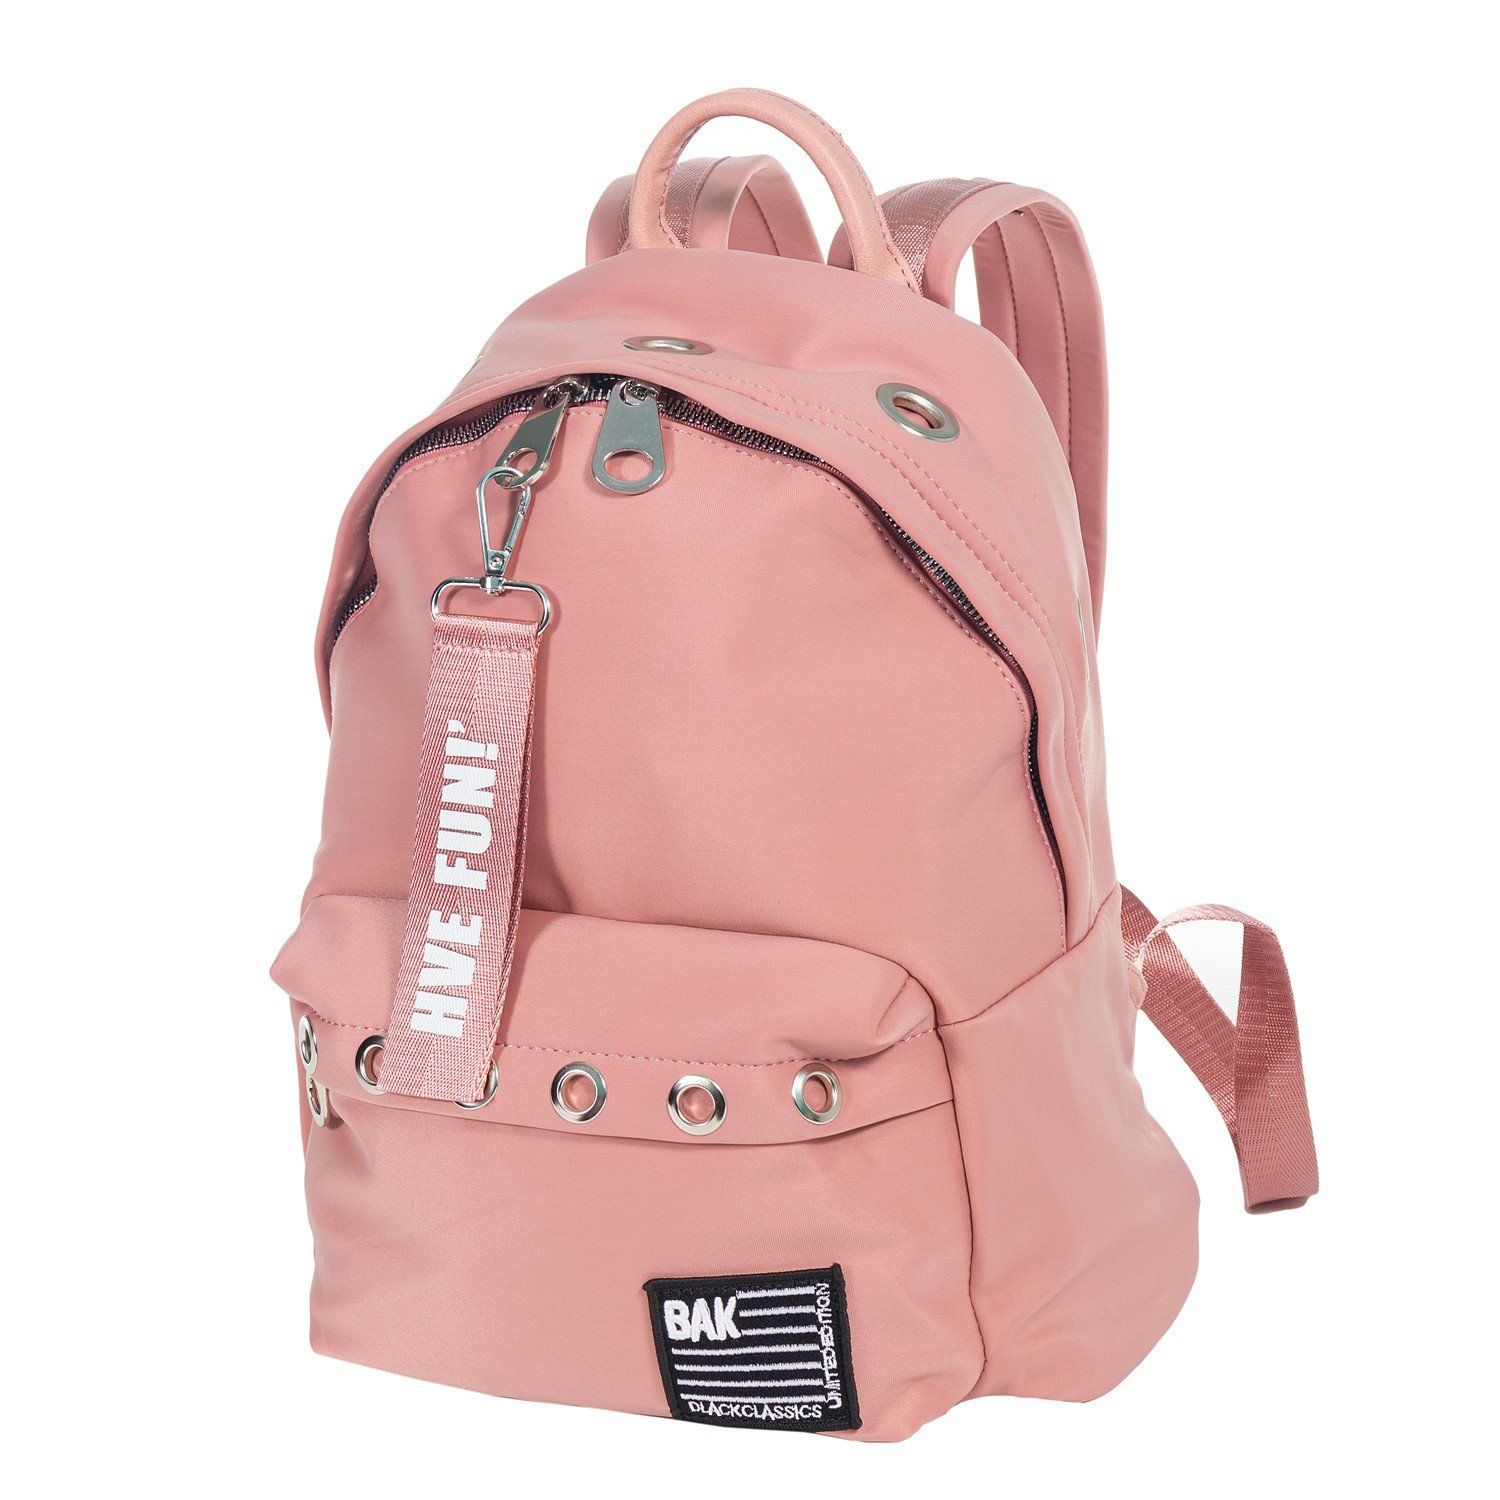 Рюкзак женский городской, розовый, с широкими лямками, объем 16 л